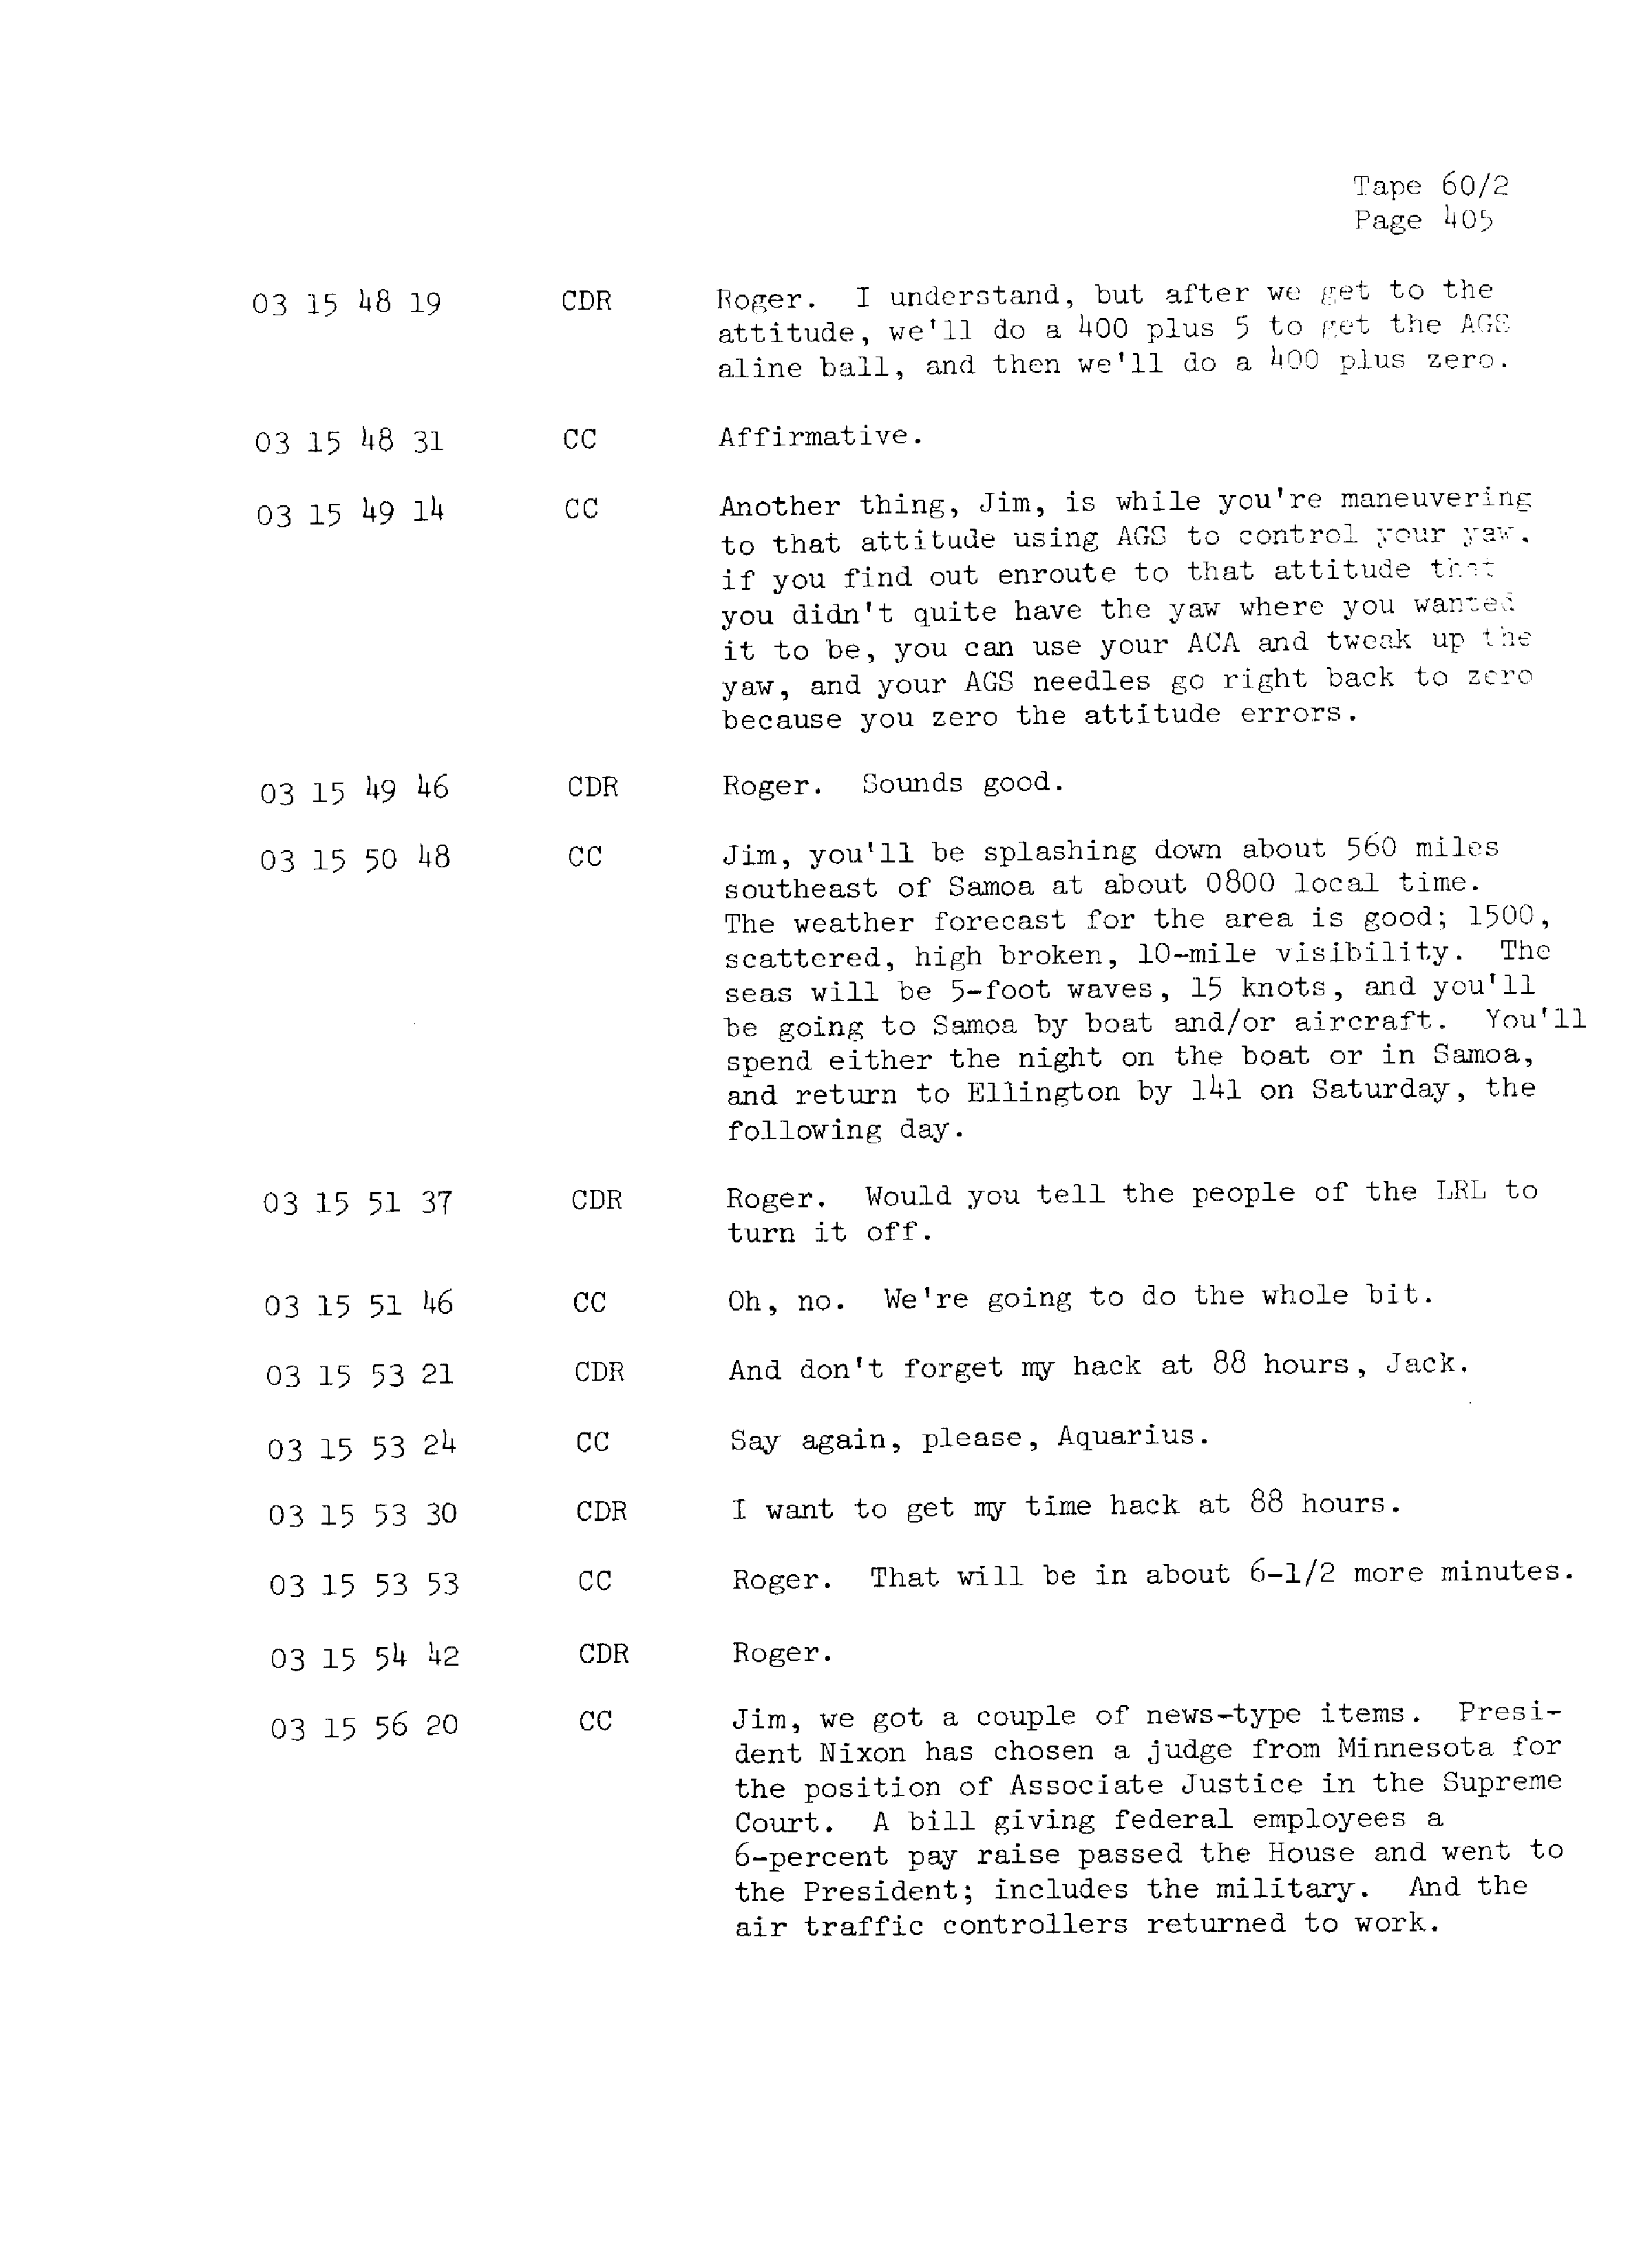 Page 412 of Apollo 13’s original transcript